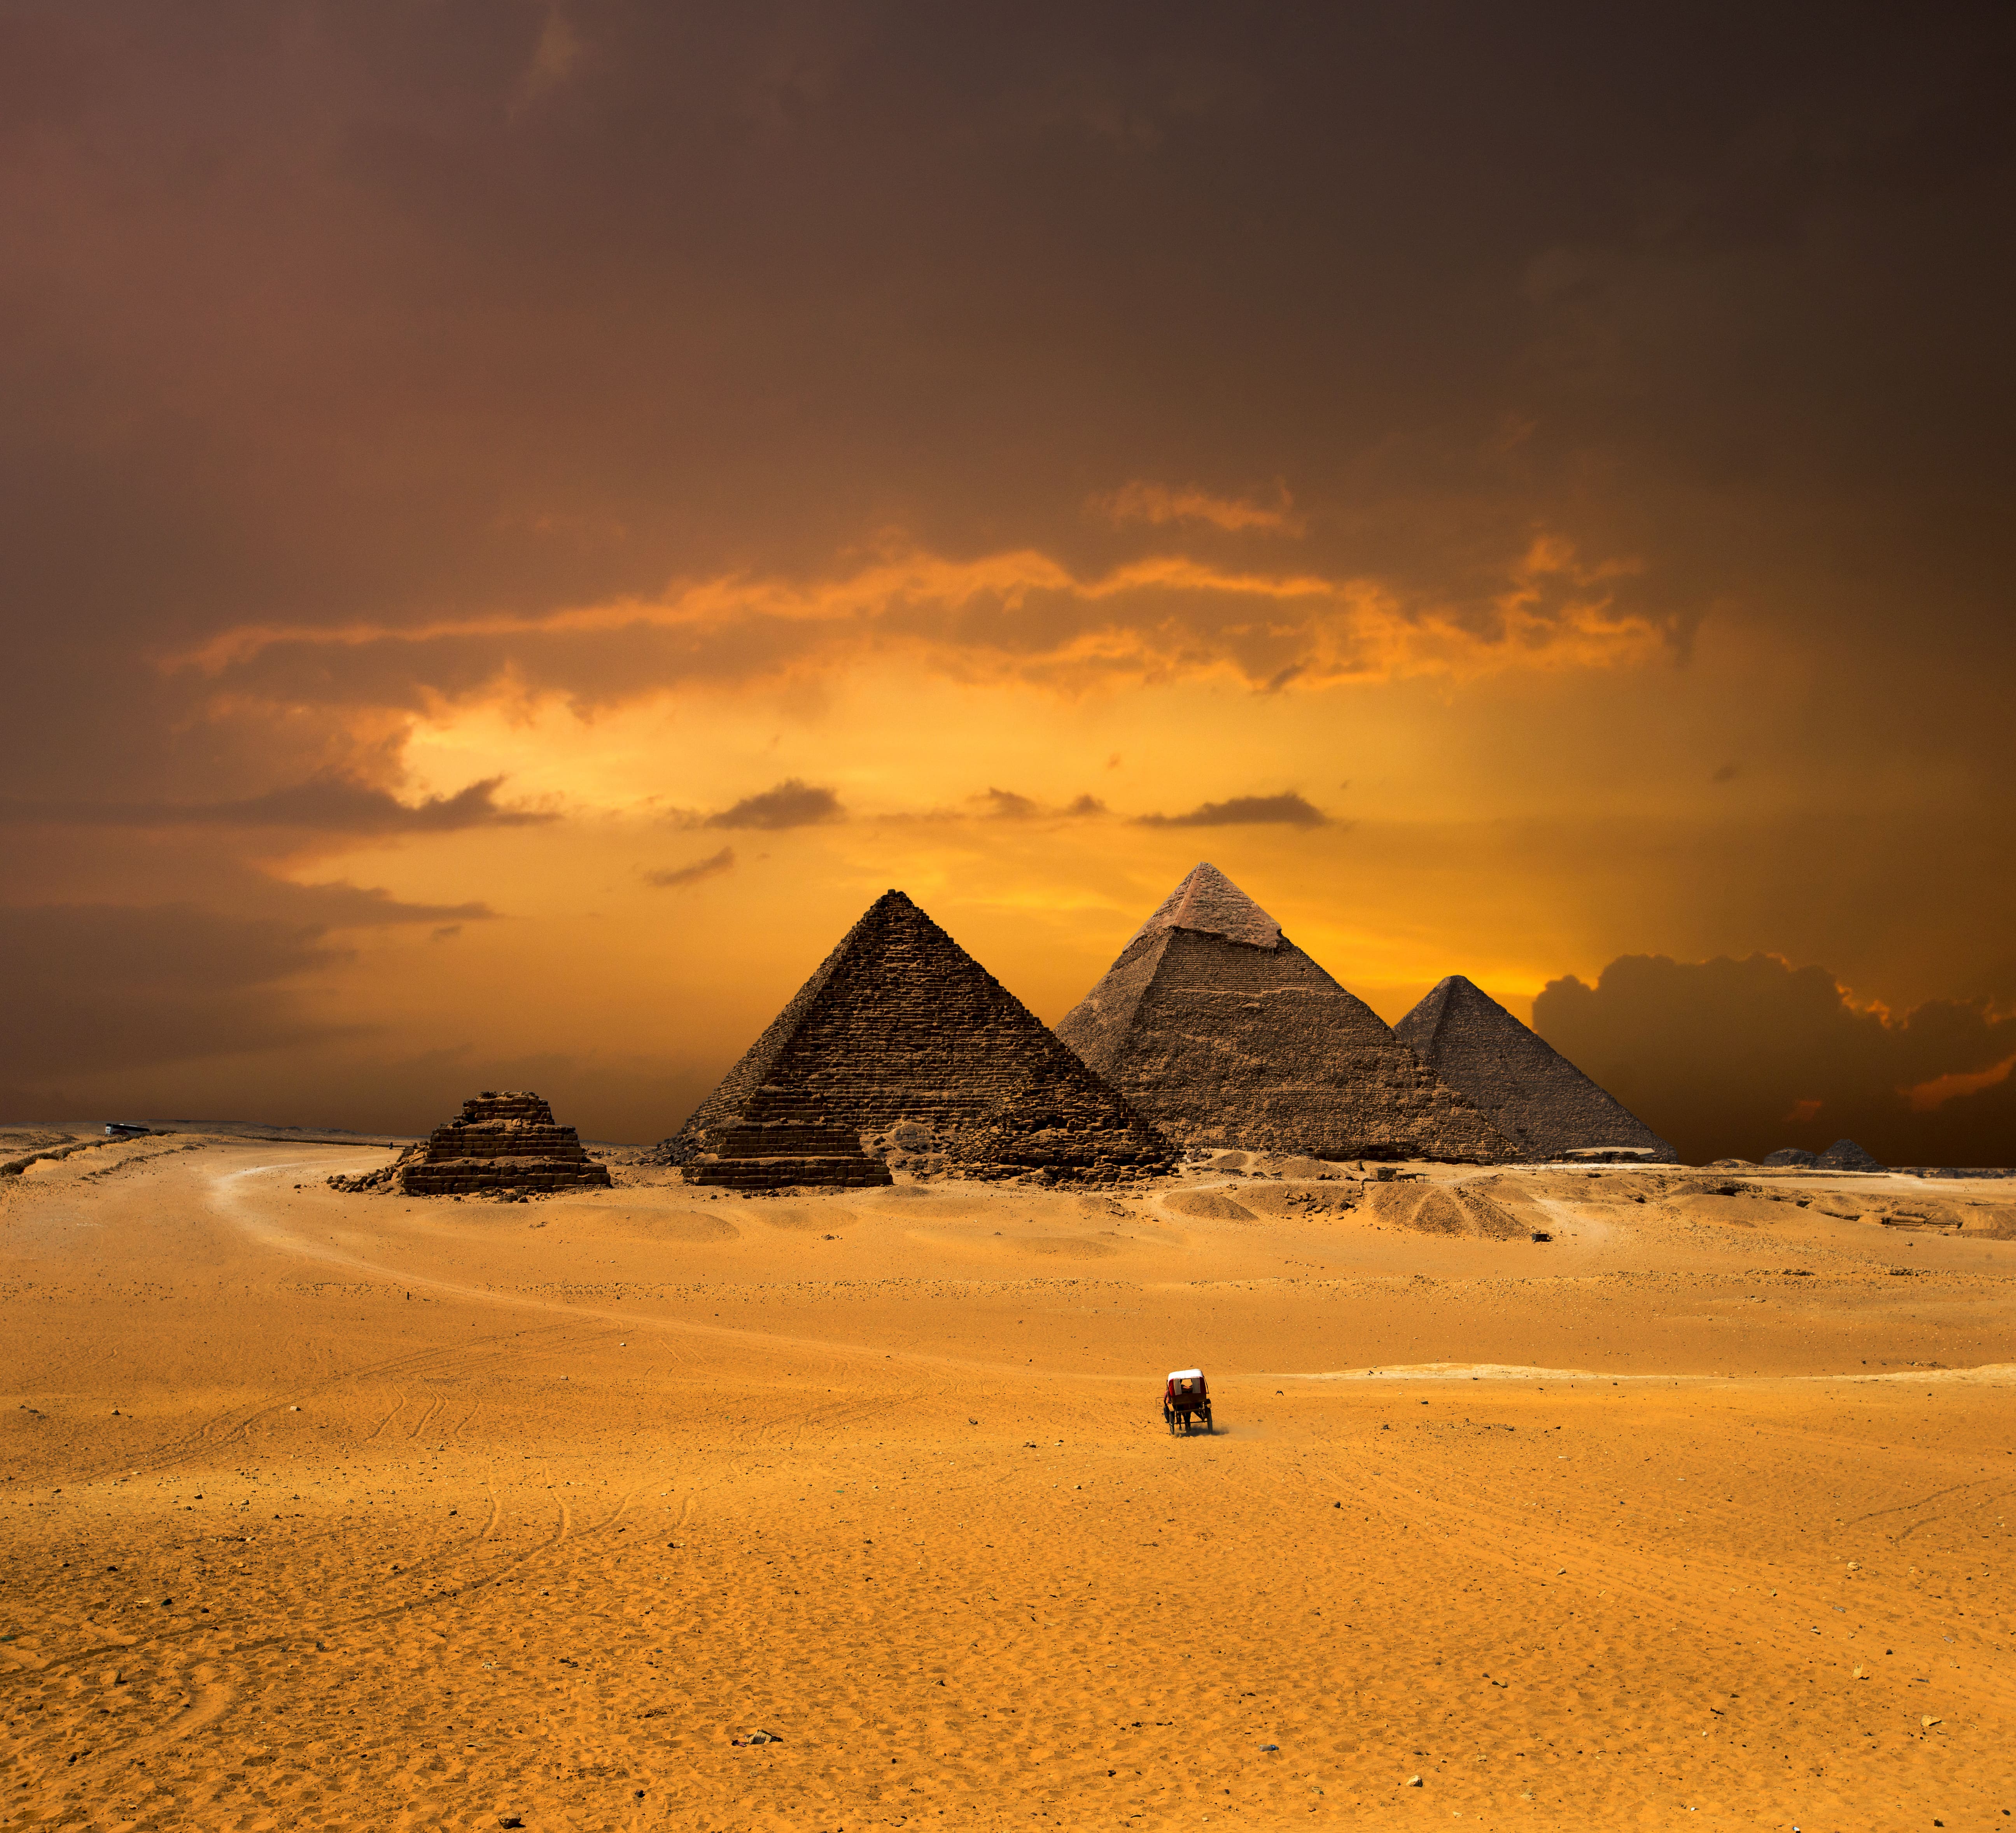 Bir İhtişamın Gölgesinde,  Mısır Piramitleri...